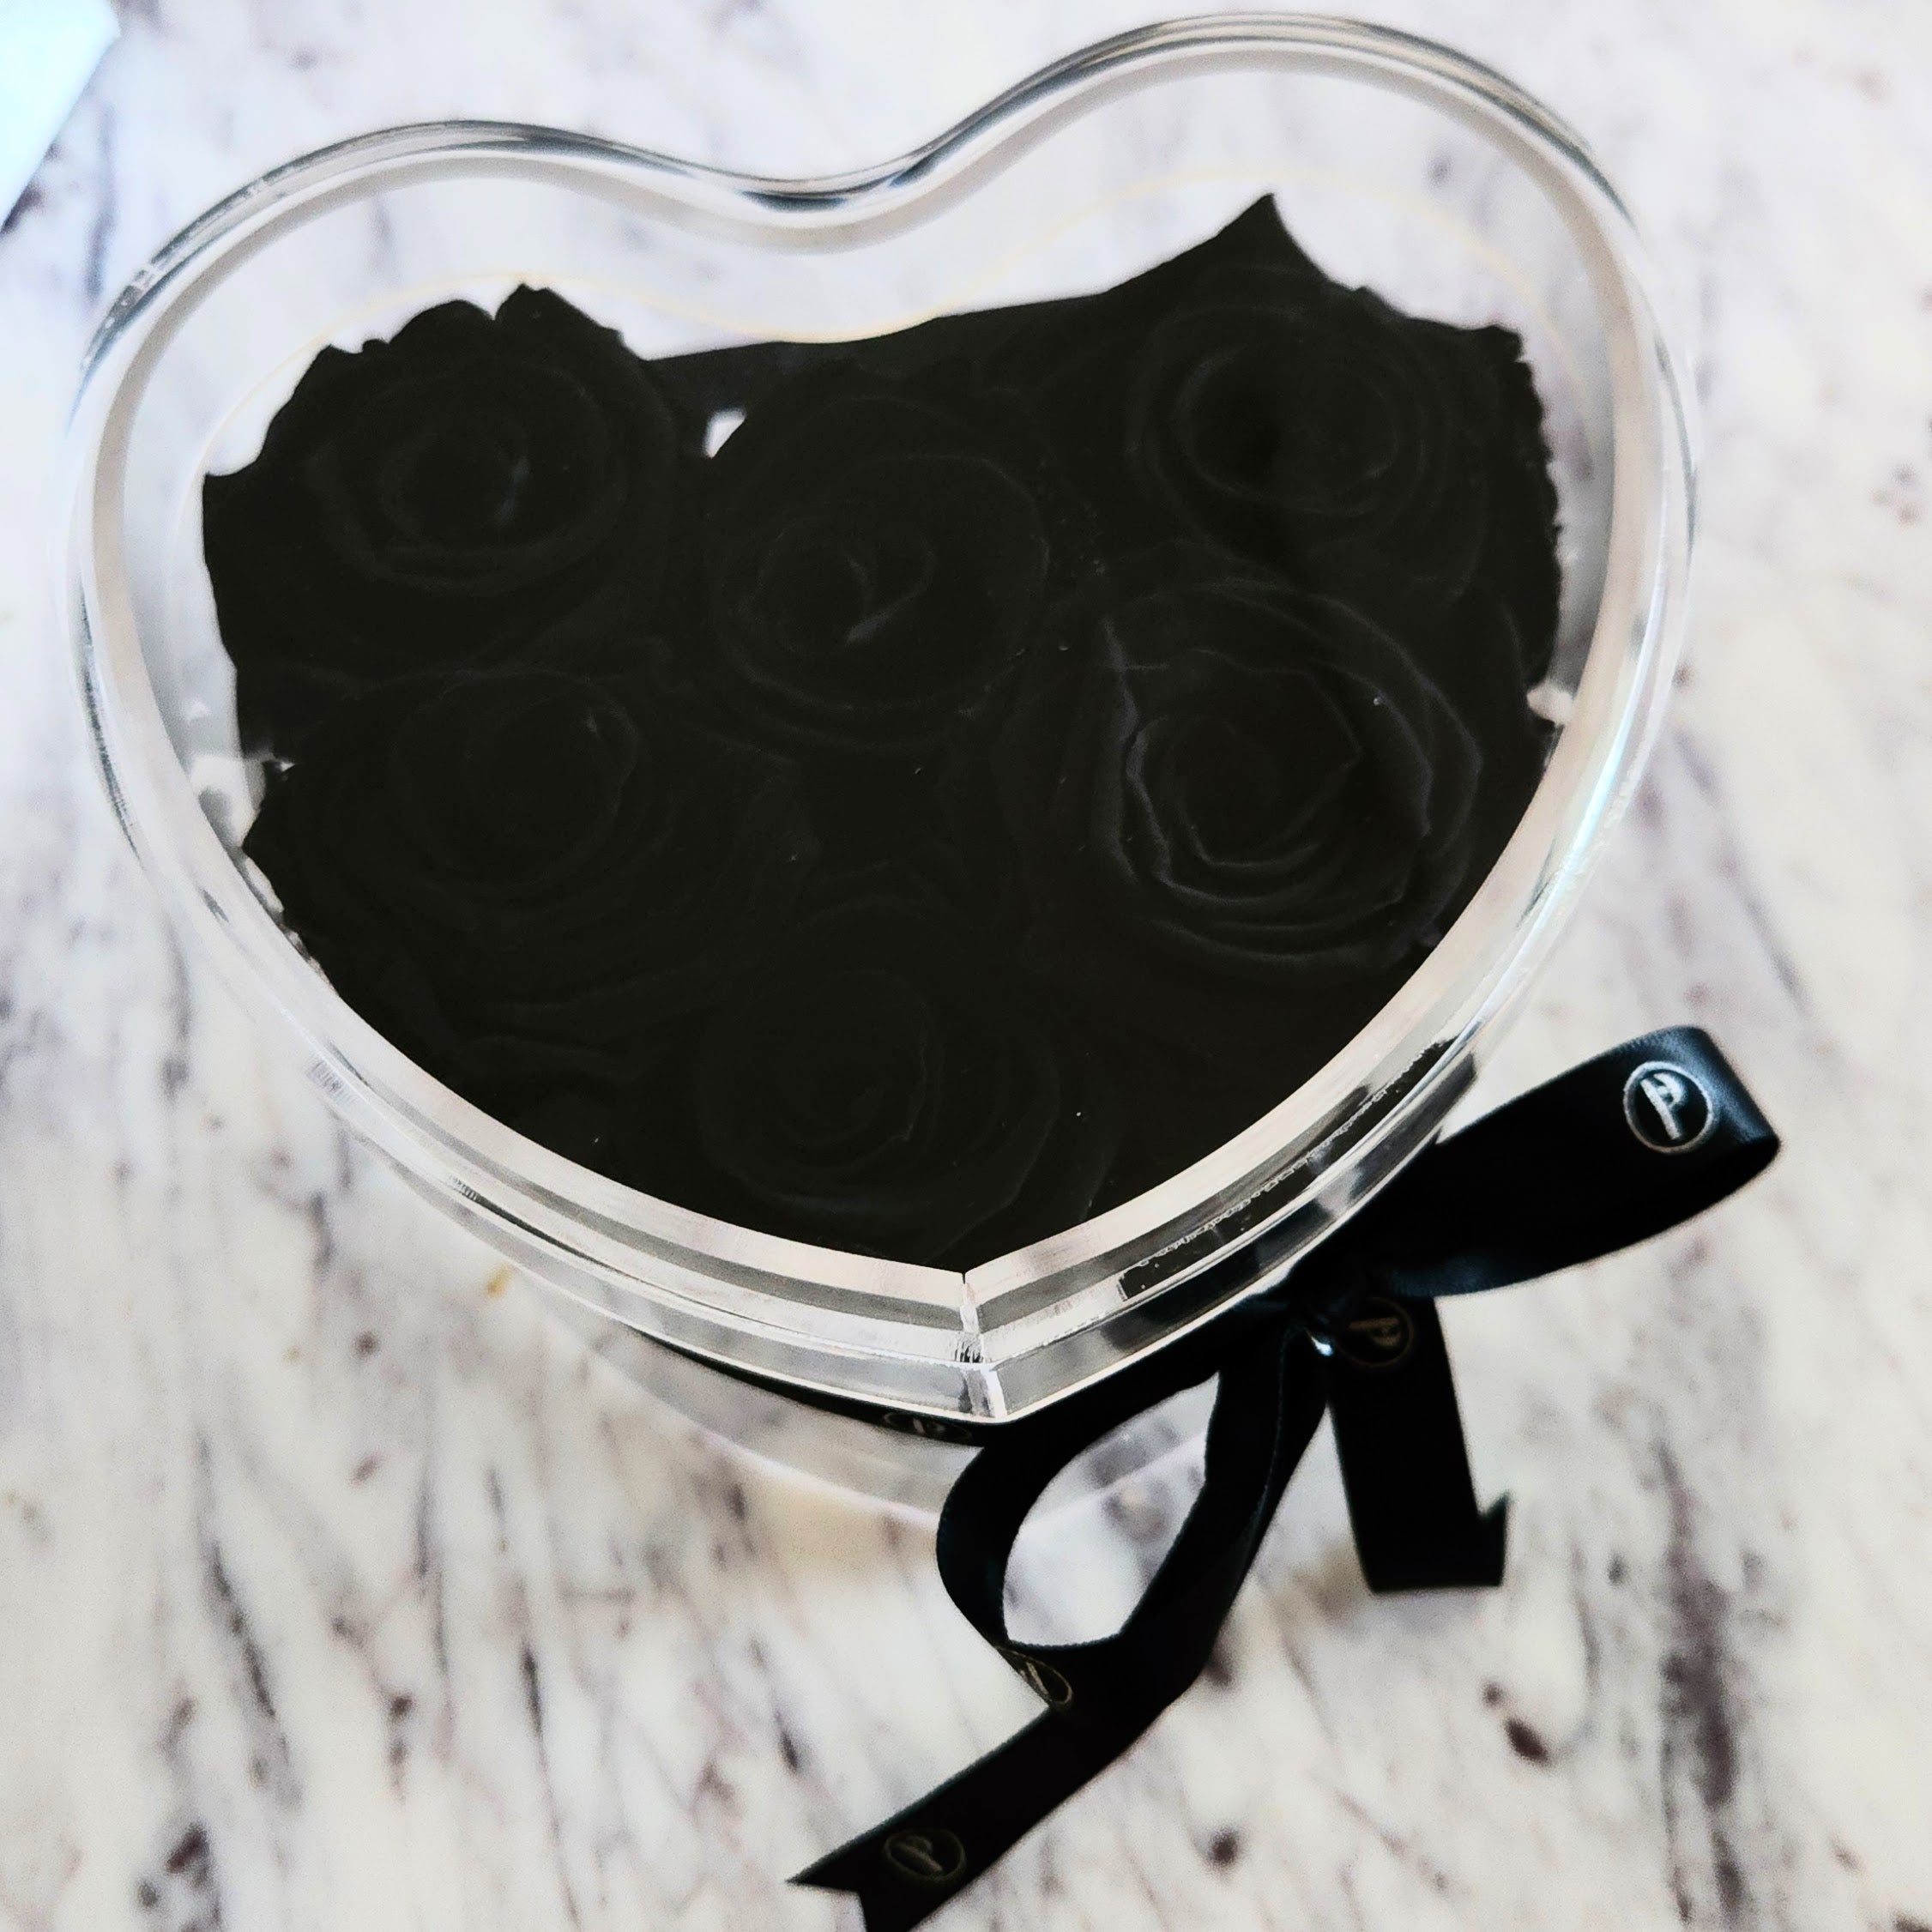 Heart-Shaped Acrylic Box of 6 Infinity Roses